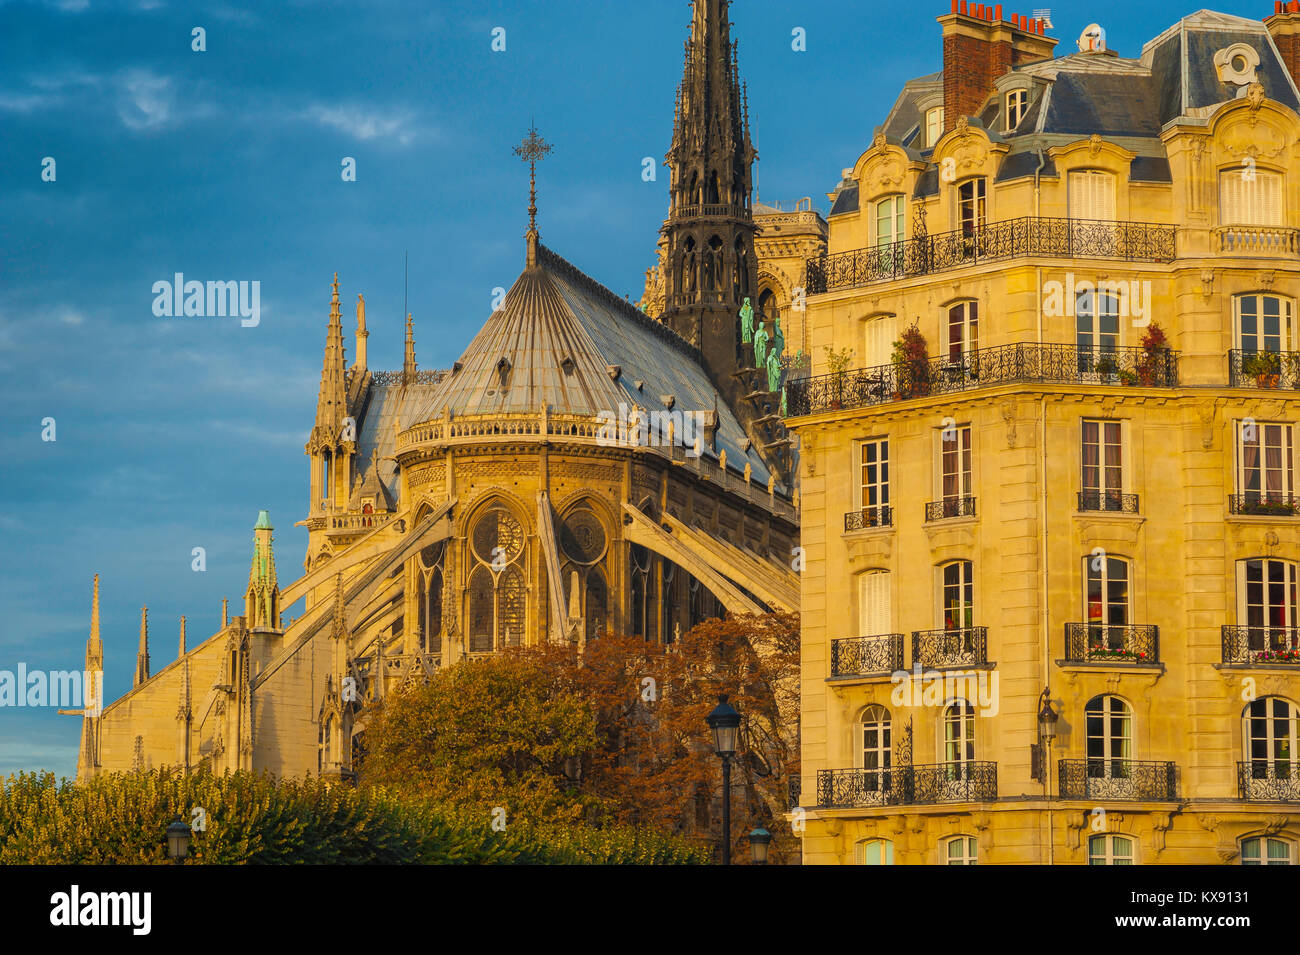 L'architecture de Paris, l'est de la Cathédrale Notre Dame à côté d'un immeuble typique du xixe siècle sur l'Ile de la Cité à Paris, France. Banque D'Images